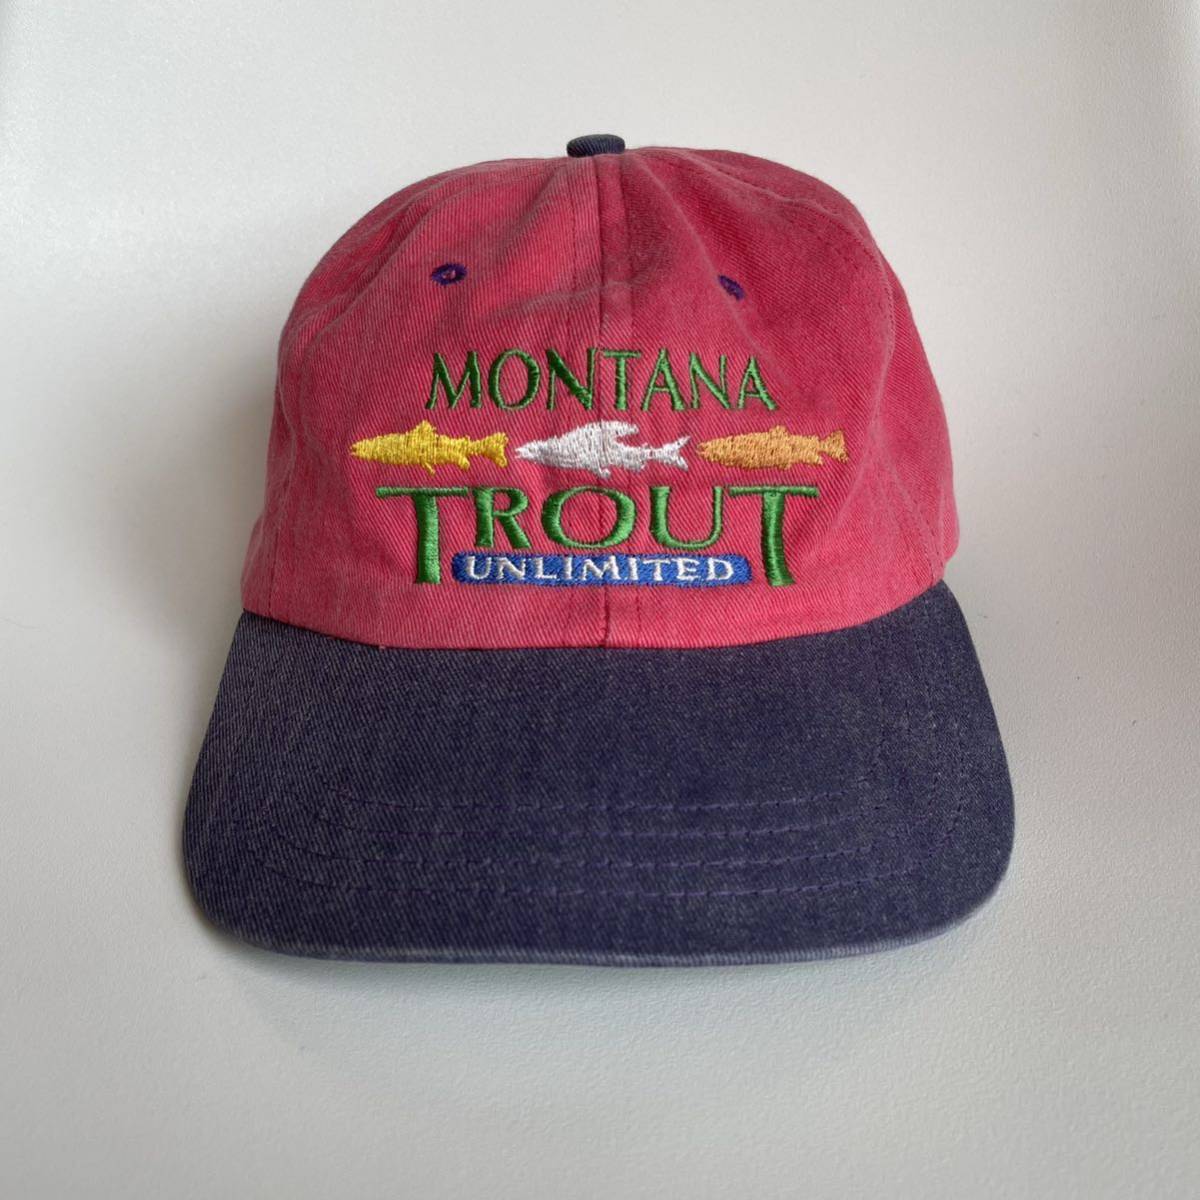 90s USA製 MONTANA TROUT キャップ コットン レザーアジャスター ビンテージ マルチカラー アニマル 帽子